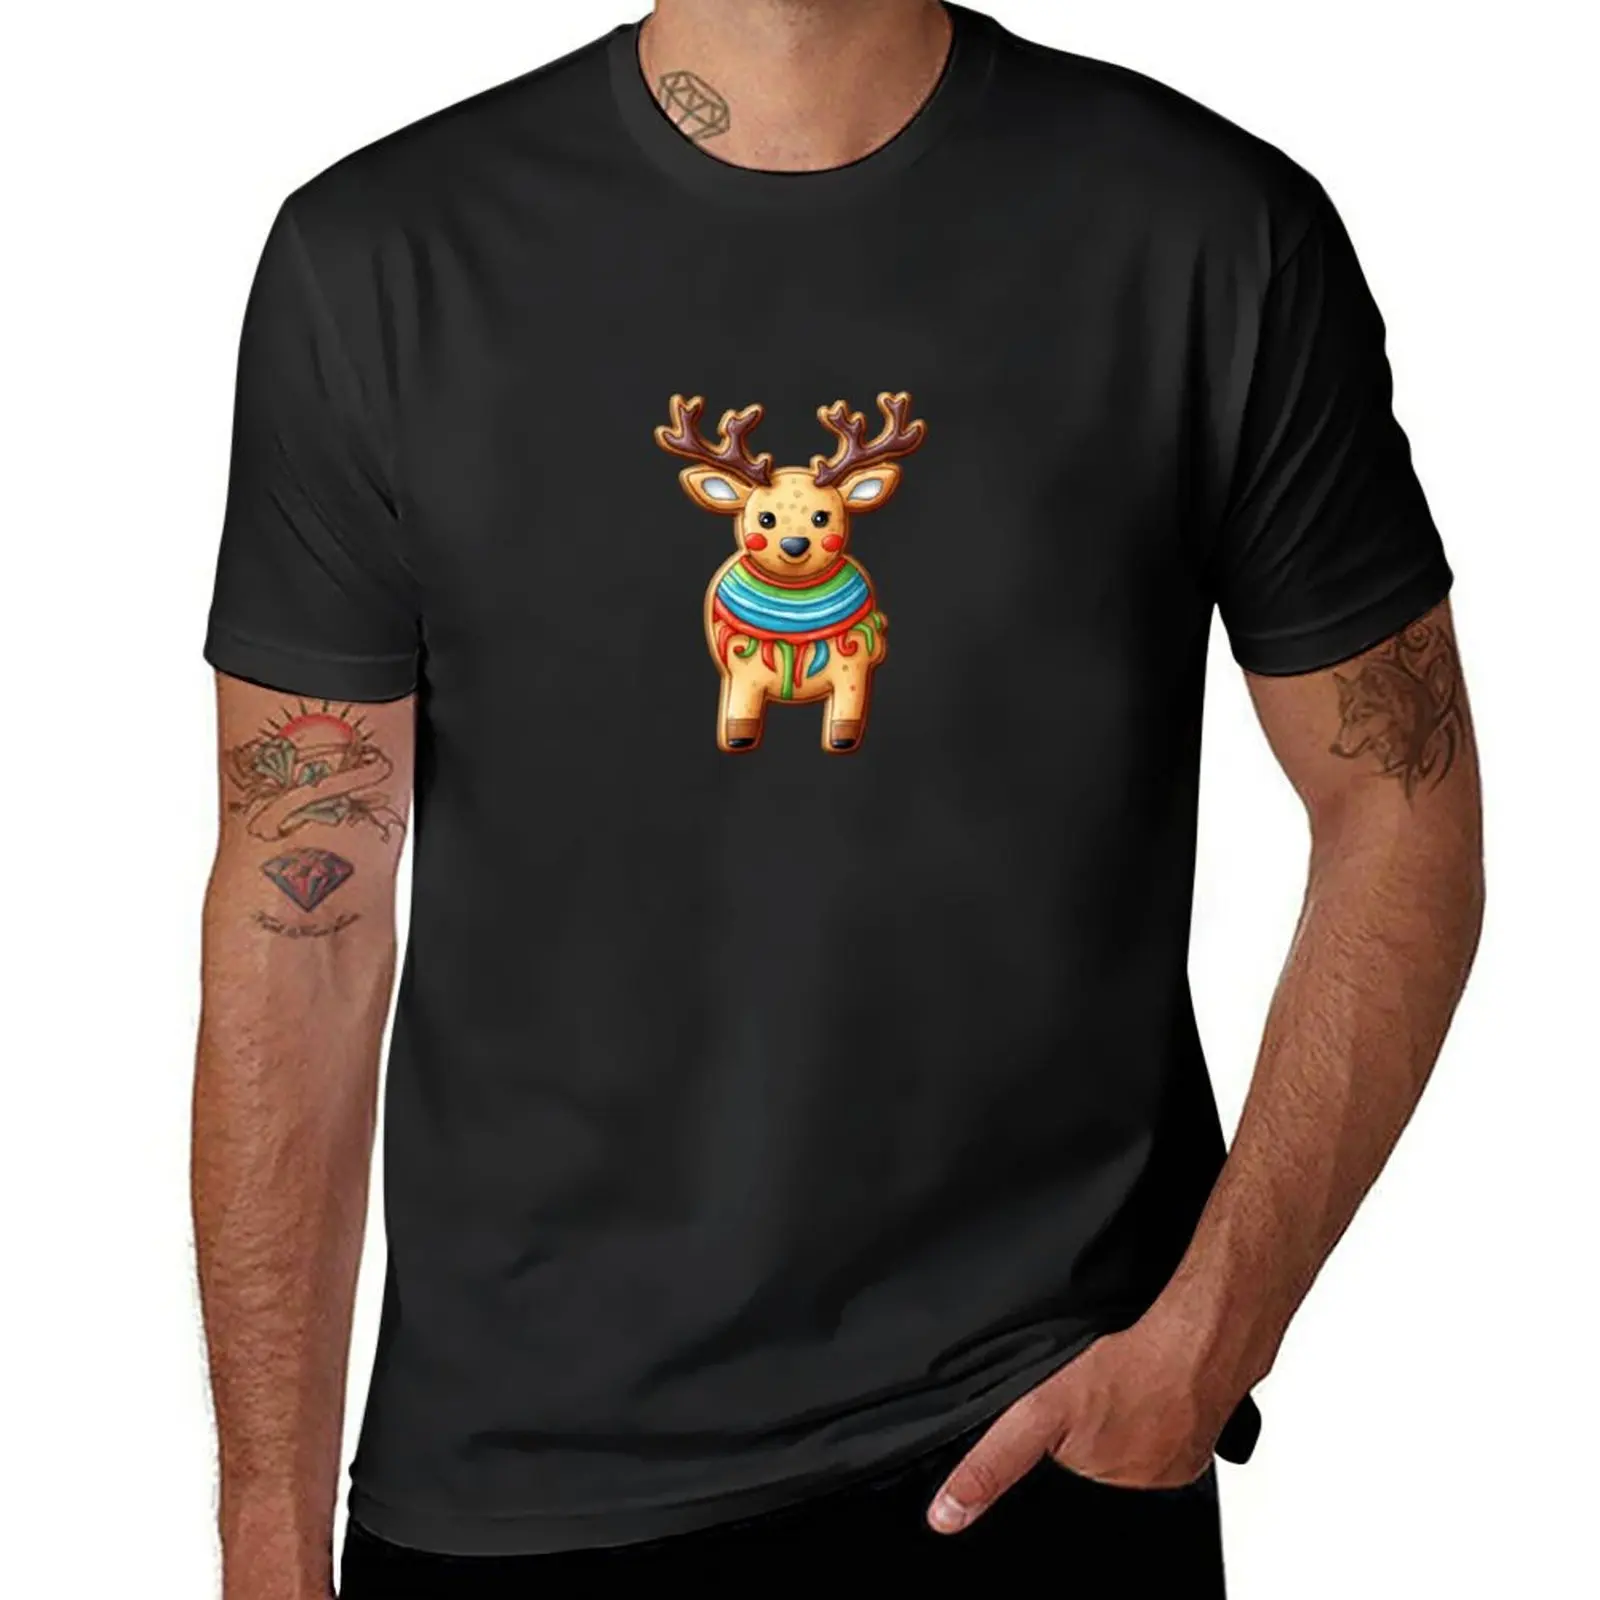 Рождественское сахарное печенье - футболка с оленем, мужская футболка оверсайз, футболки, мужские забавные футболки, футболки для мужчин, хлопок